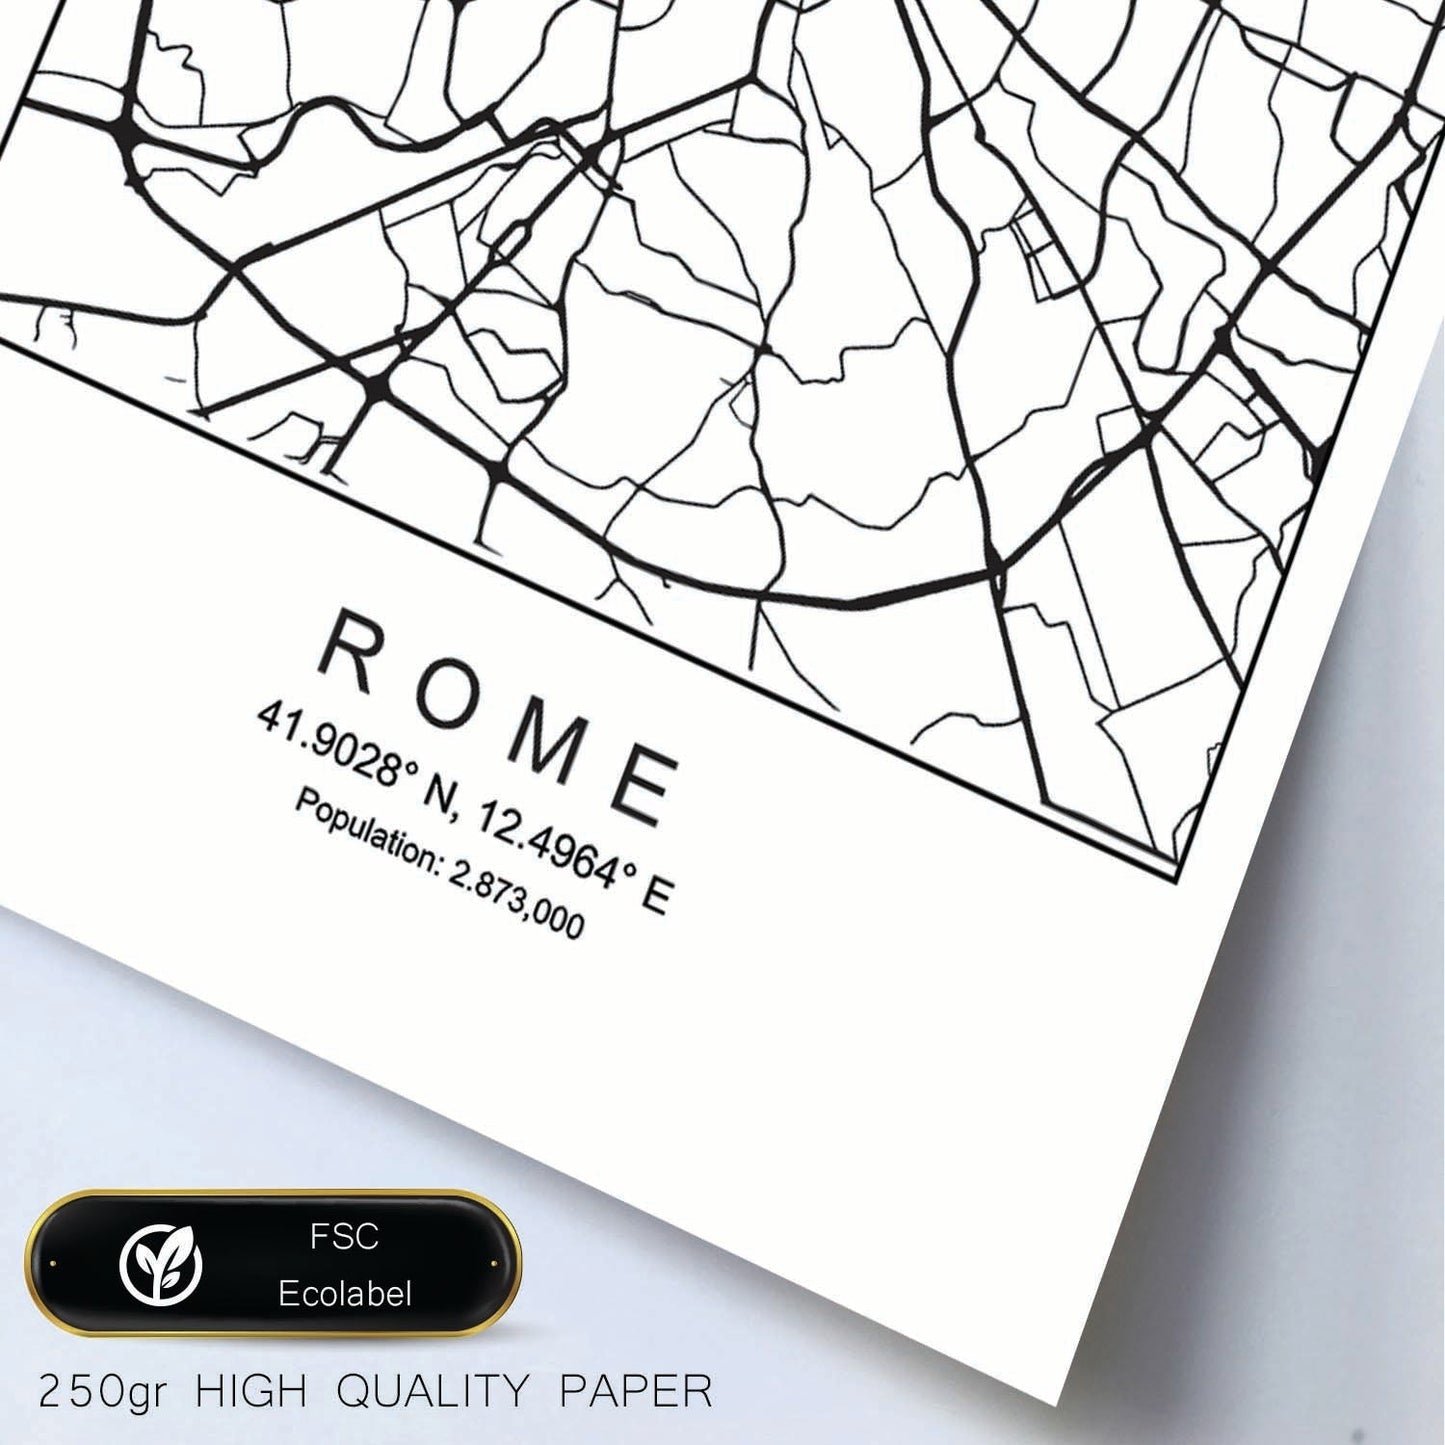 Lámina mapa de la ciudad Rome estilo nordico en blanco y negro.-Artwork-Nacnic-Nacnic Estudio SL